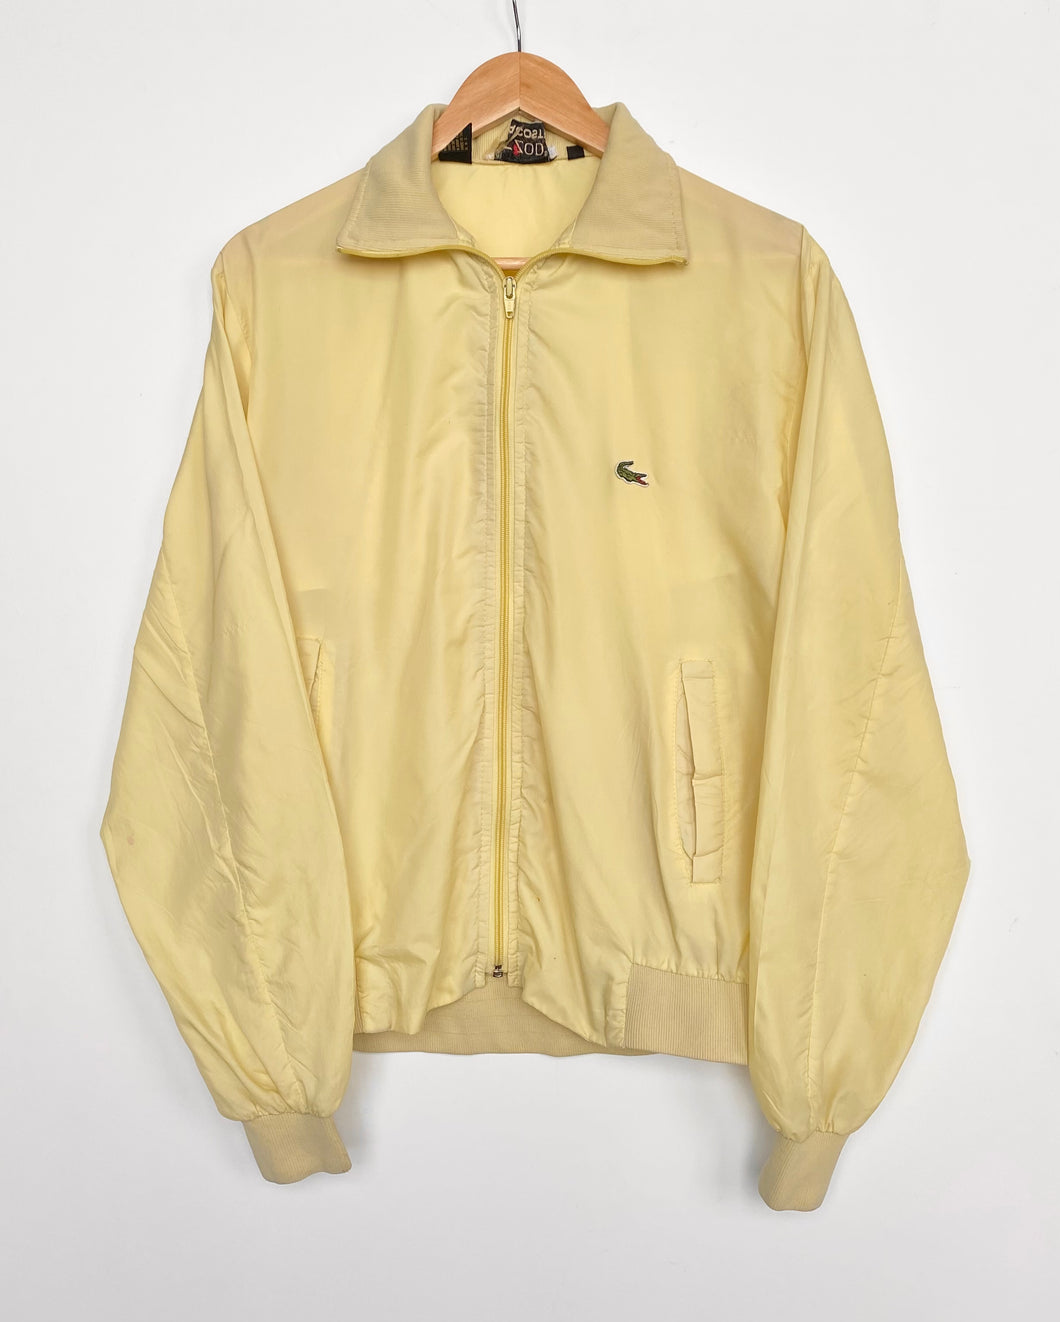 90s Lacoste bomber jacket (M)